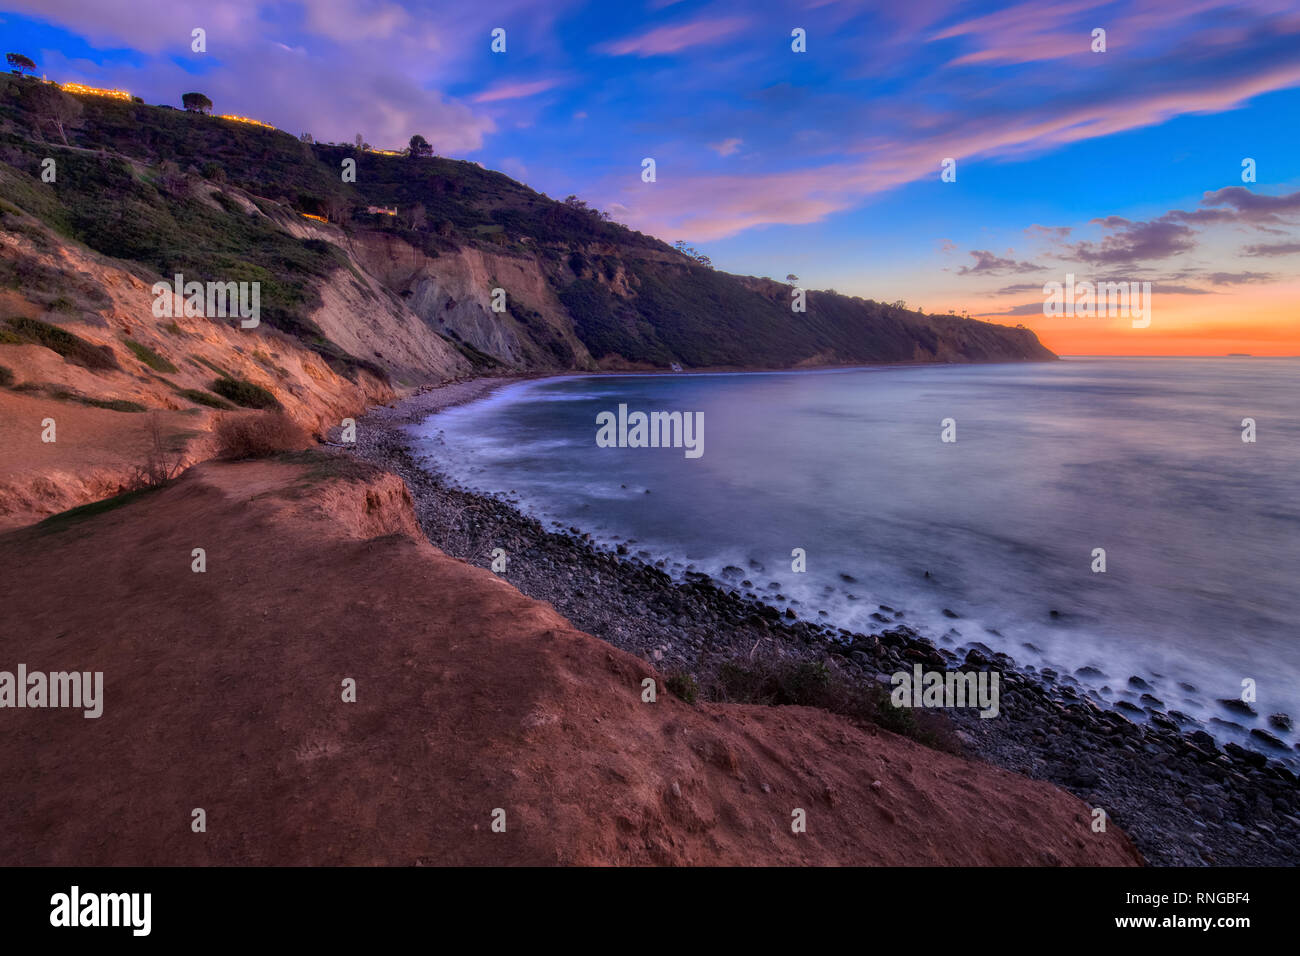 Une longue exposition photo de la côte de la Californie du Sud après le coucher du soleil avec des nuages dans le ciel, Bluff Cove, Palos Verdes Estates, Californie Banque D'Images